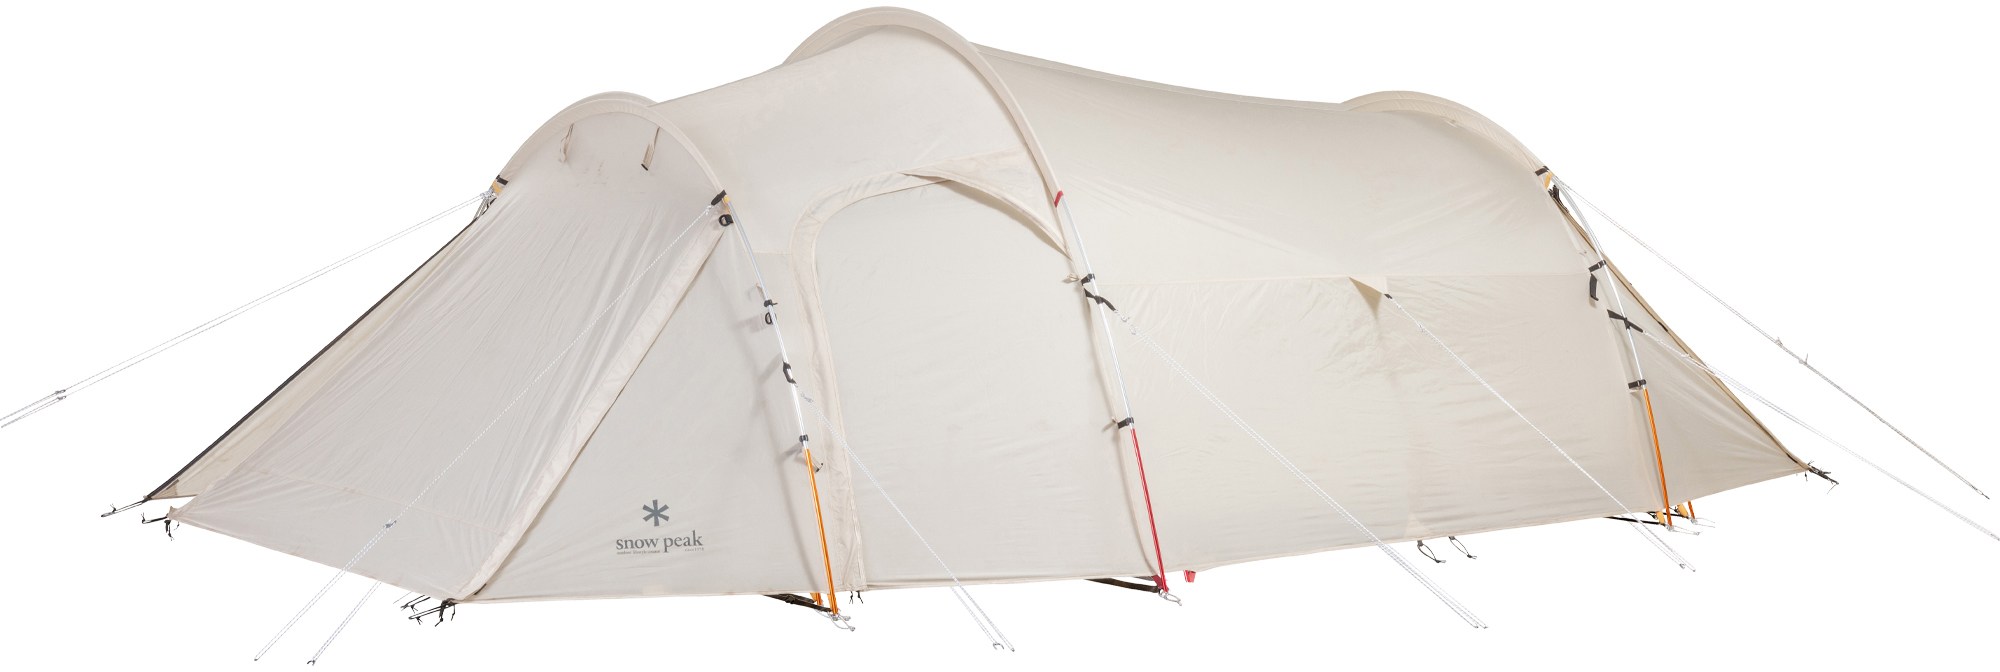 Палатка с куполом хранилища Snow Peak, белый 10 шт регулируемая тросовая пряжка для кемпинга s образные натяжители набор креплений наружные палатки для кемпинга закрепление аксессуа